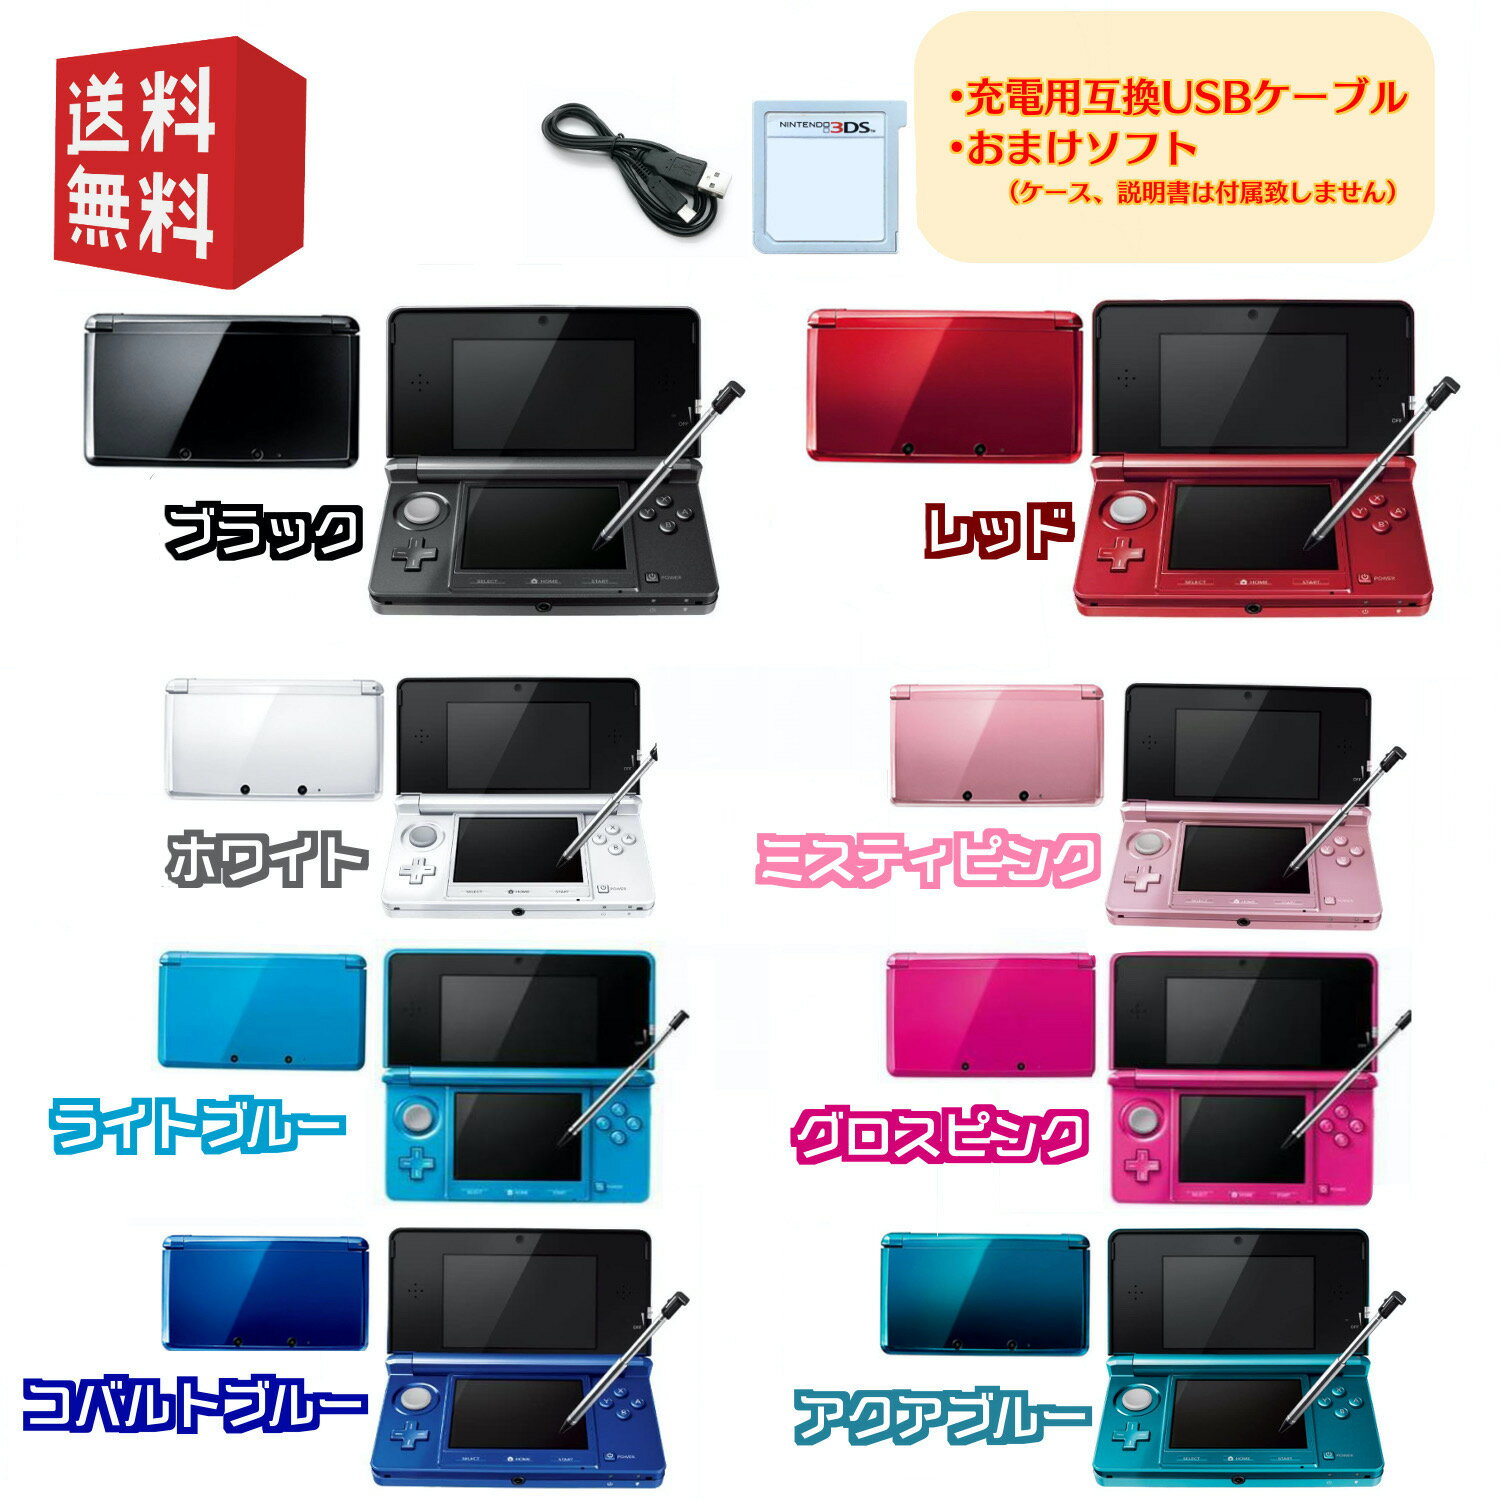 Nintendo 3DS 本体 【すぐ遊べるセット】 USBケーブル・おまけソフト付 選べるカラー8色 ☆キャンペーン対象商品 ☆